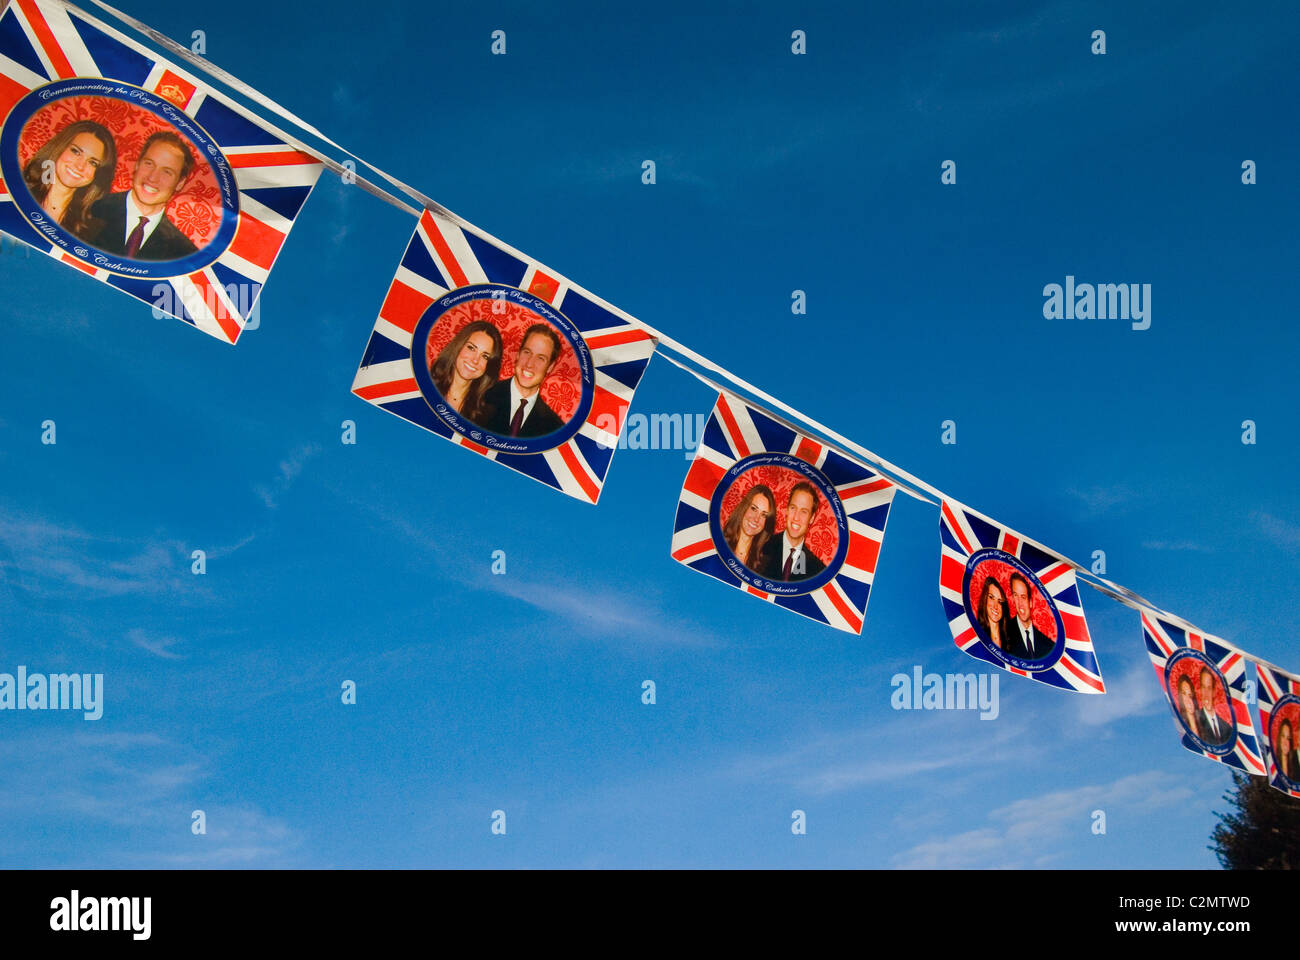 Königliche Hochzeit Girlande Fahnen, mit Union Jack, British / uk Flagge und ein Bild von William und Kate. Stockfoto